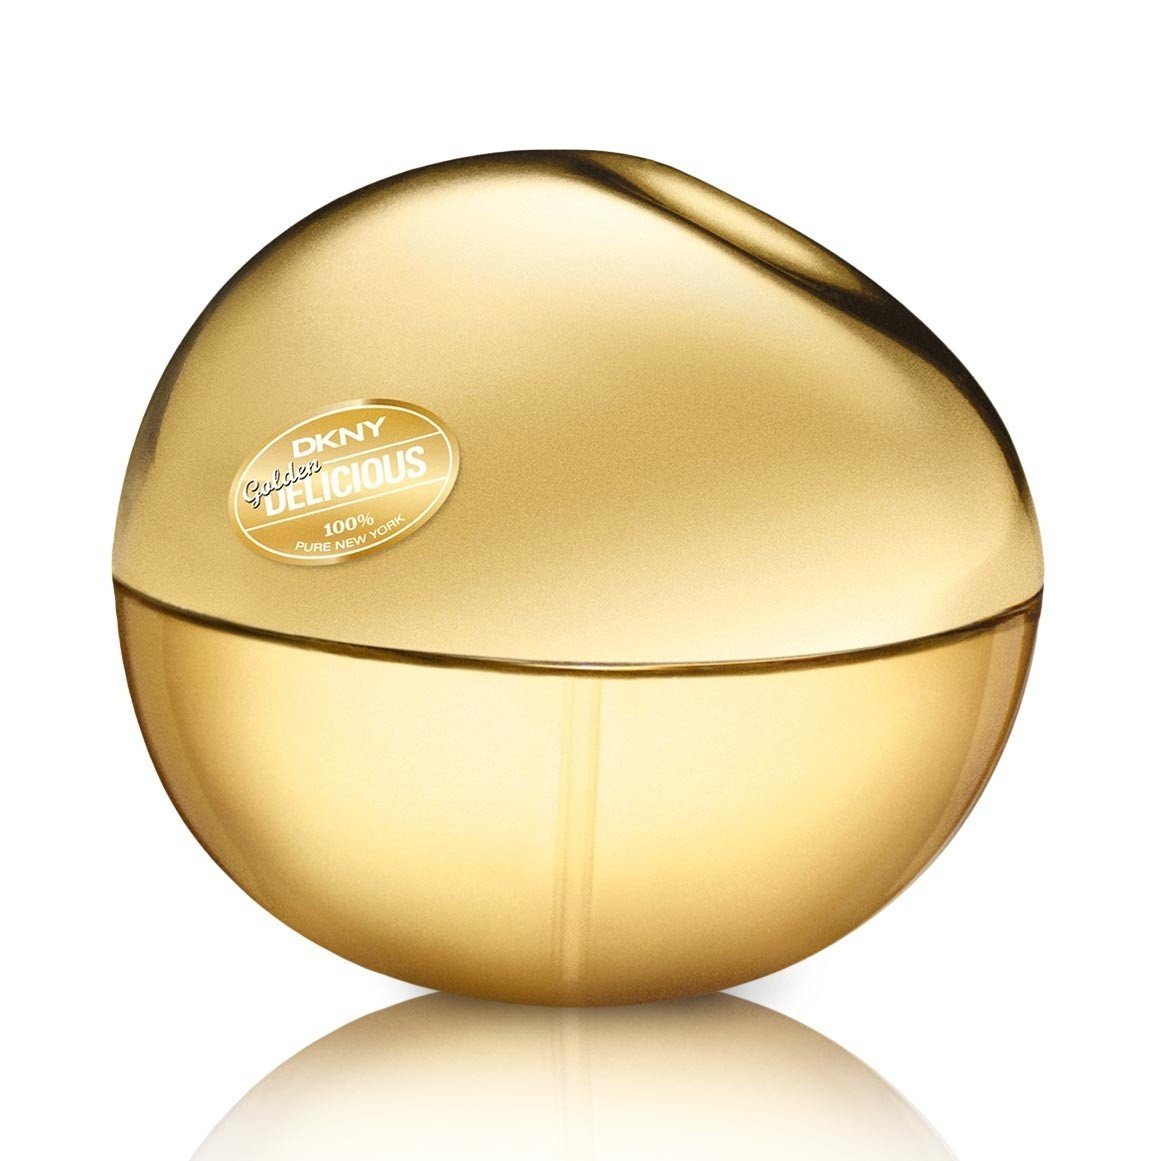 Dkny Golden Delicious Eau de Parfum Spray 30ml - LookincredibleDKNY22548228586